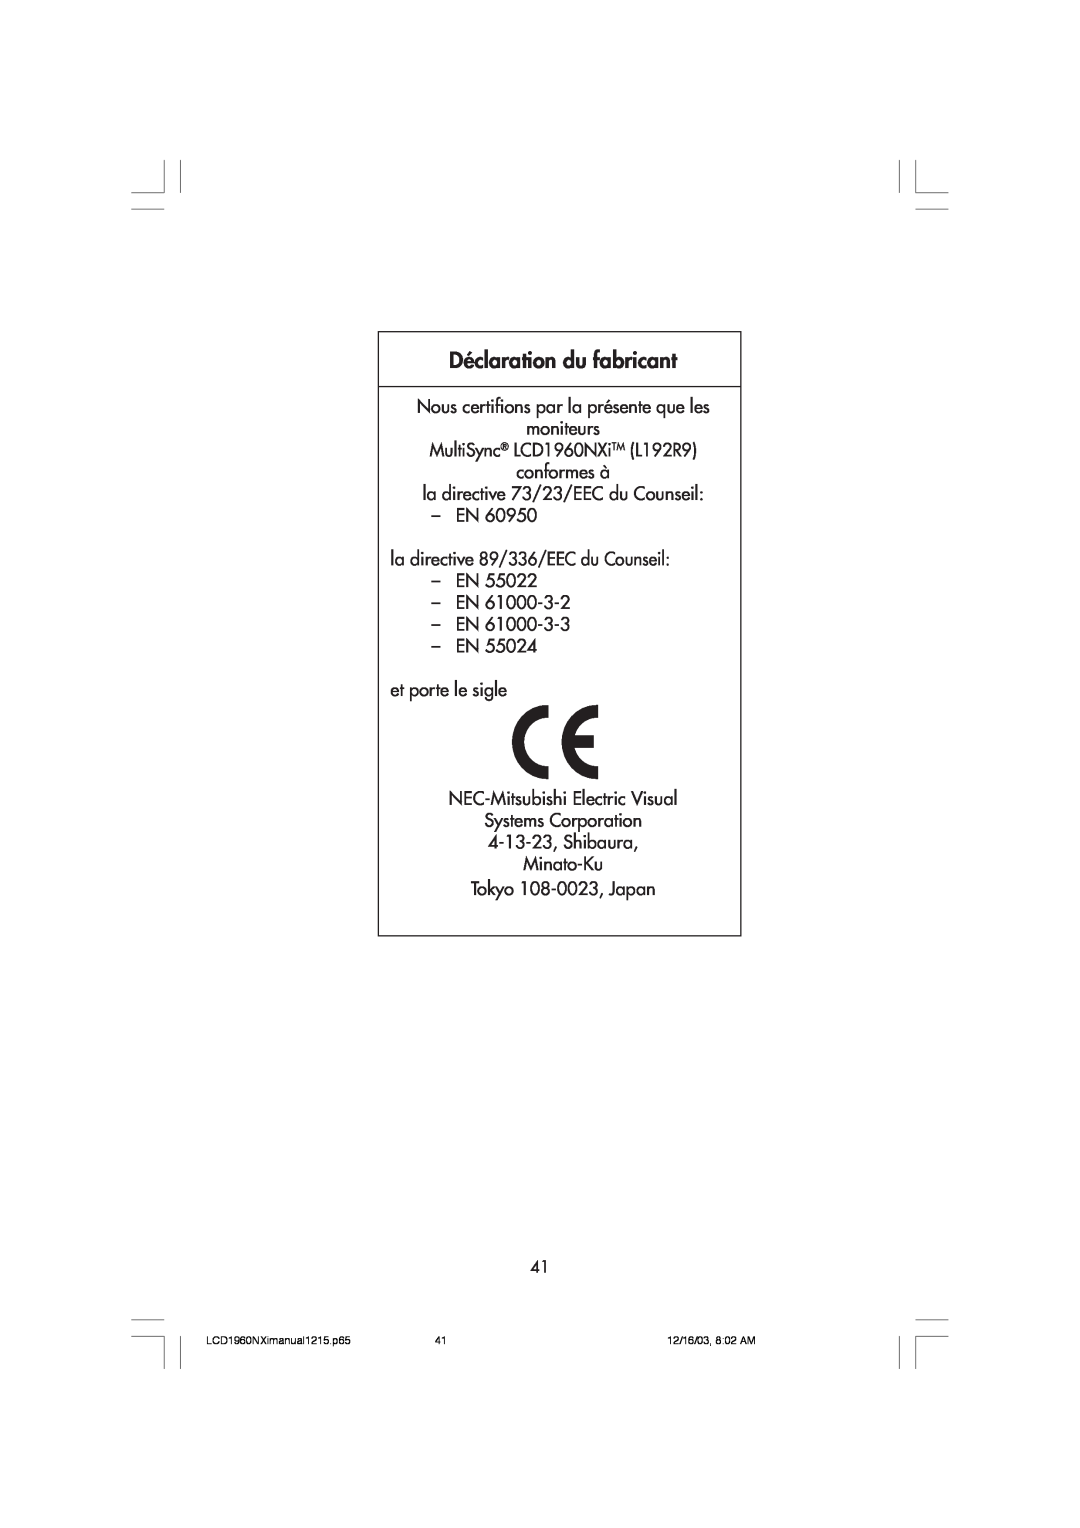 NEC LCD1960NXI Déclaration du fabricant, Nous certifions par la prŽsente que les moniteurs, LCD1960NXimanual1215.p65 